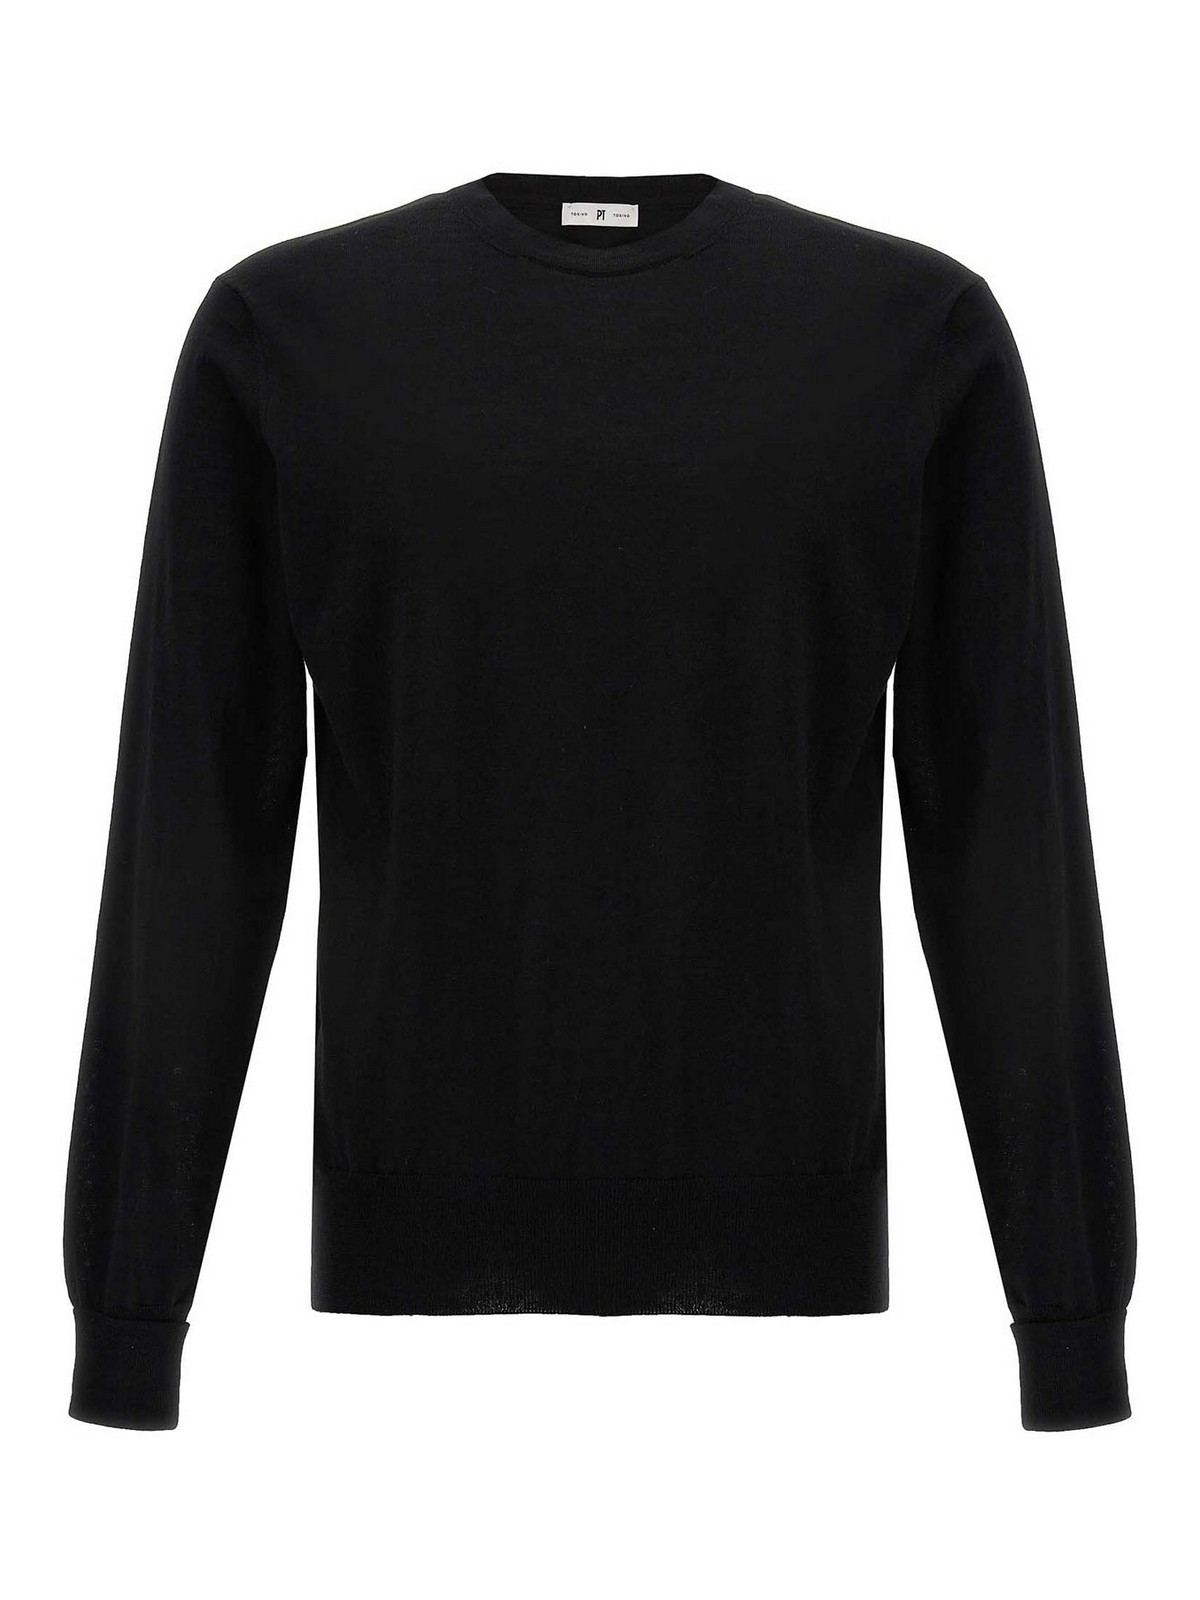 Pt Torino Merino Wool Sweater. In Black